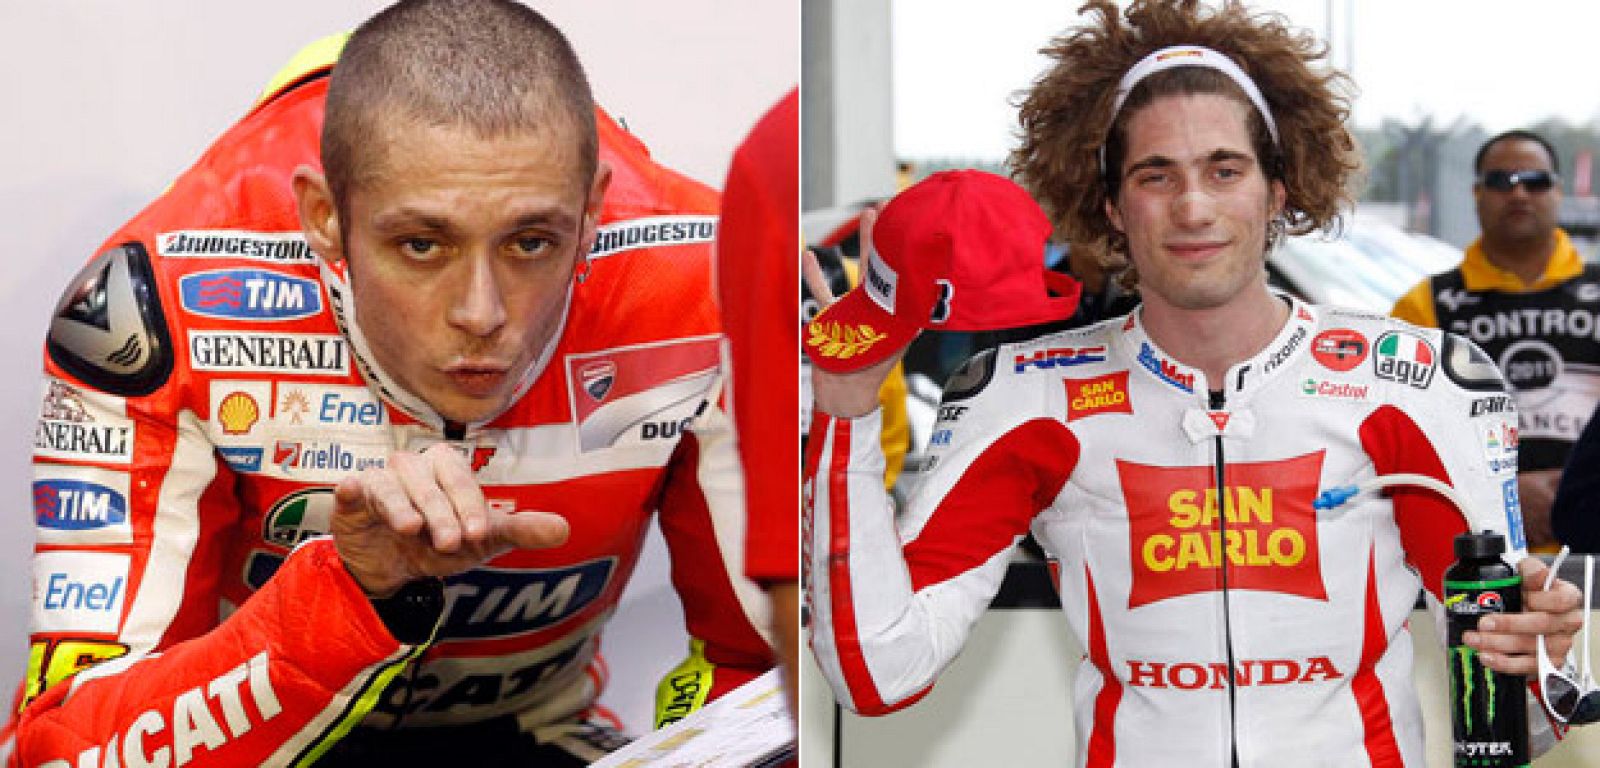 Valentino y Simoncelli serán entrevistados en exclusiva en 'Paddock' GP.